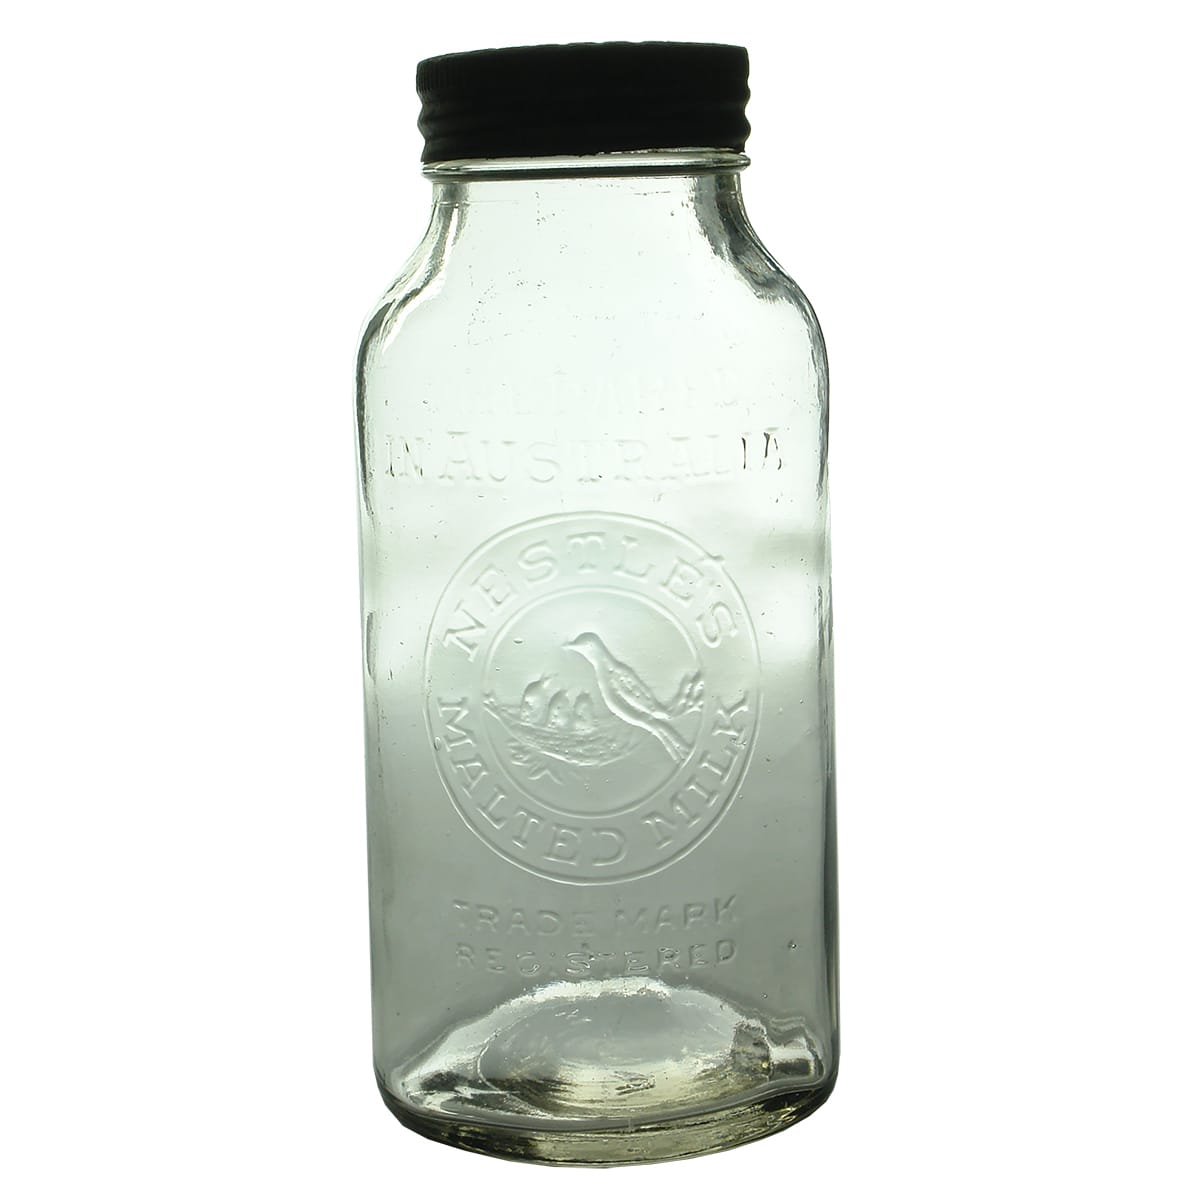 Jar. Nestle's Malted Milk. Medium size. Original Cap.